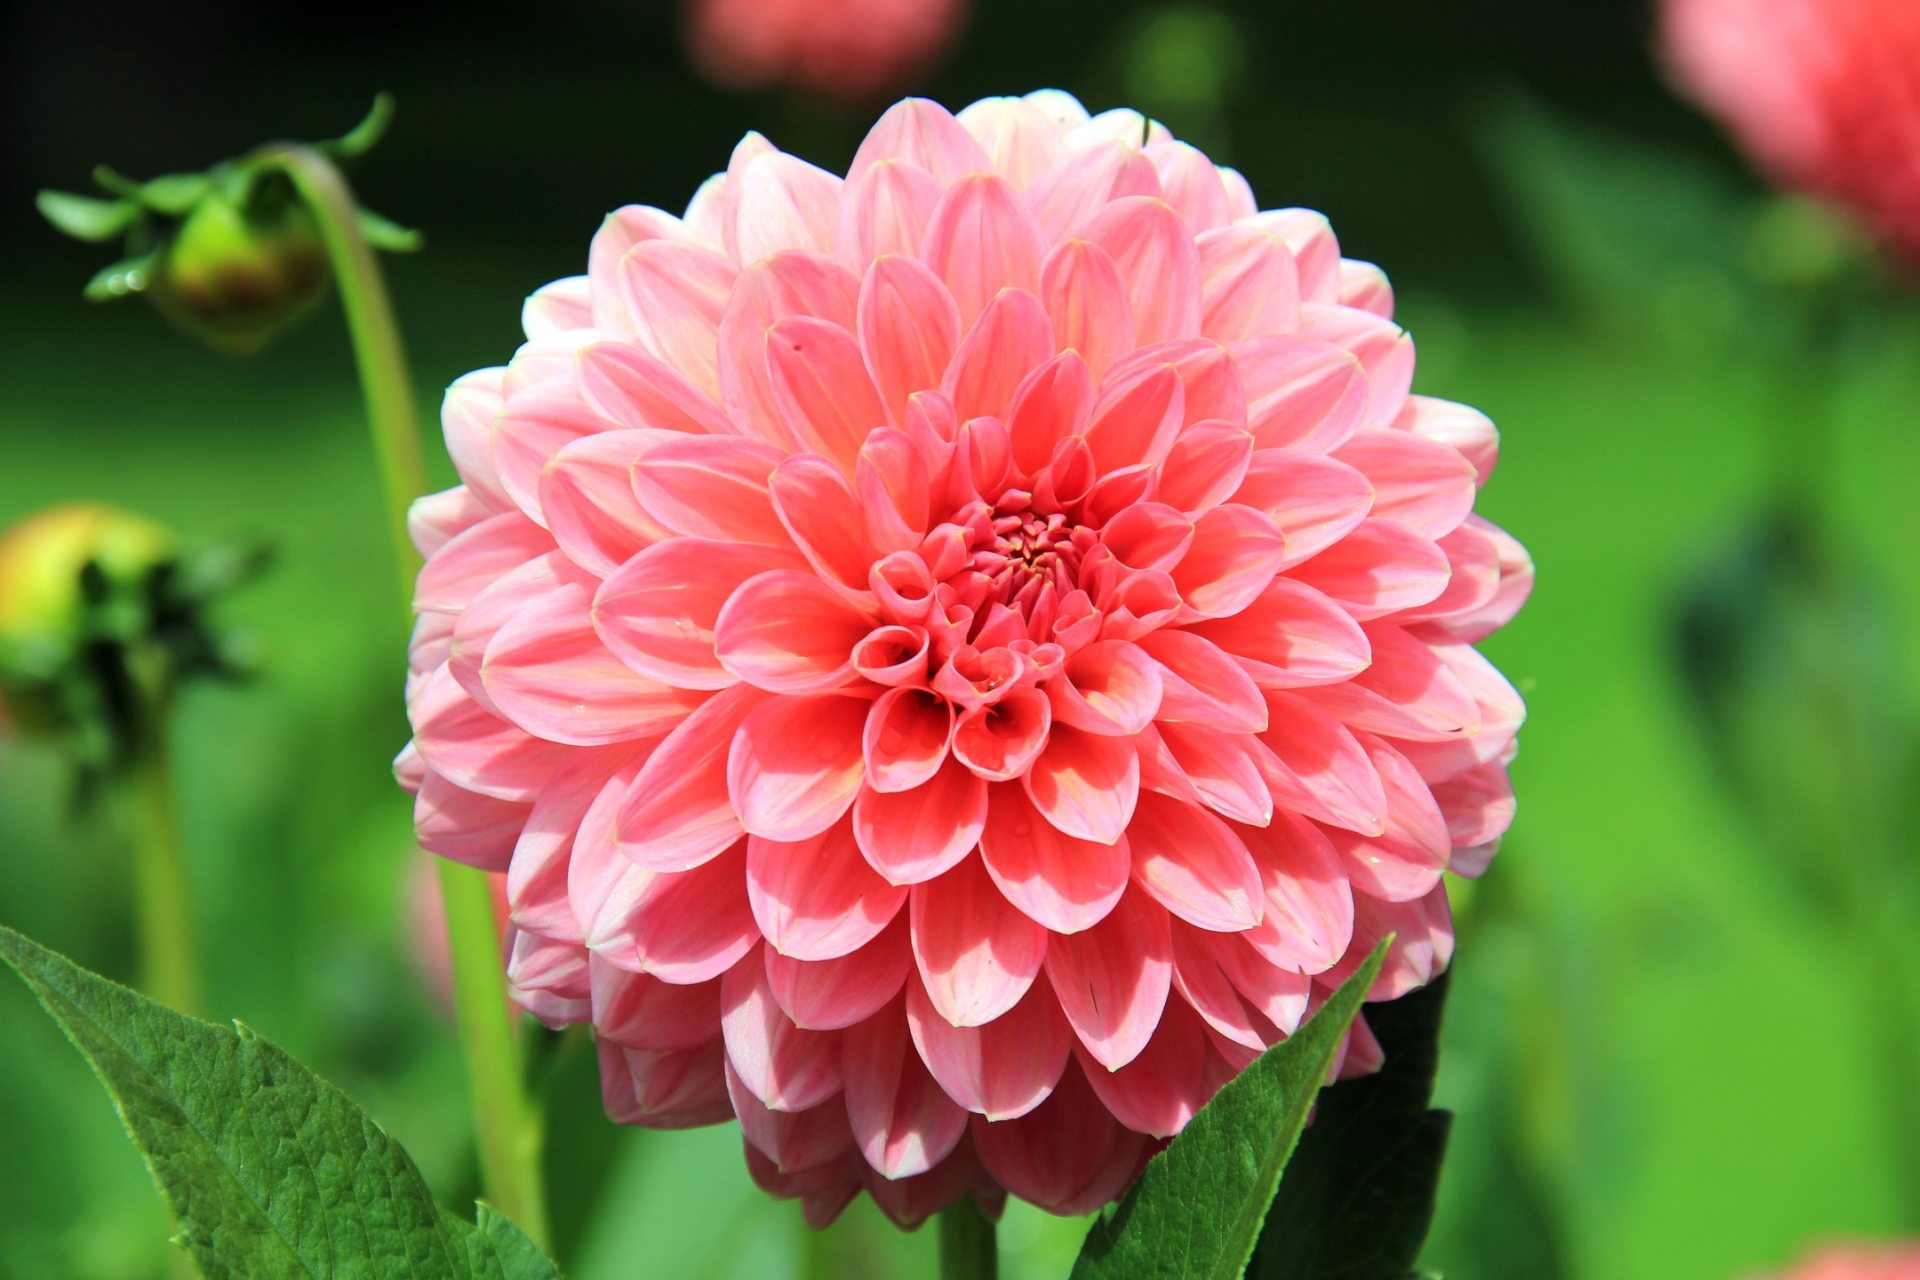 007 Light Pink Dahlia Flower Hd Wallpaper - Flowers For Whatsapp Dp , HD Wallpaper & Backgrounds